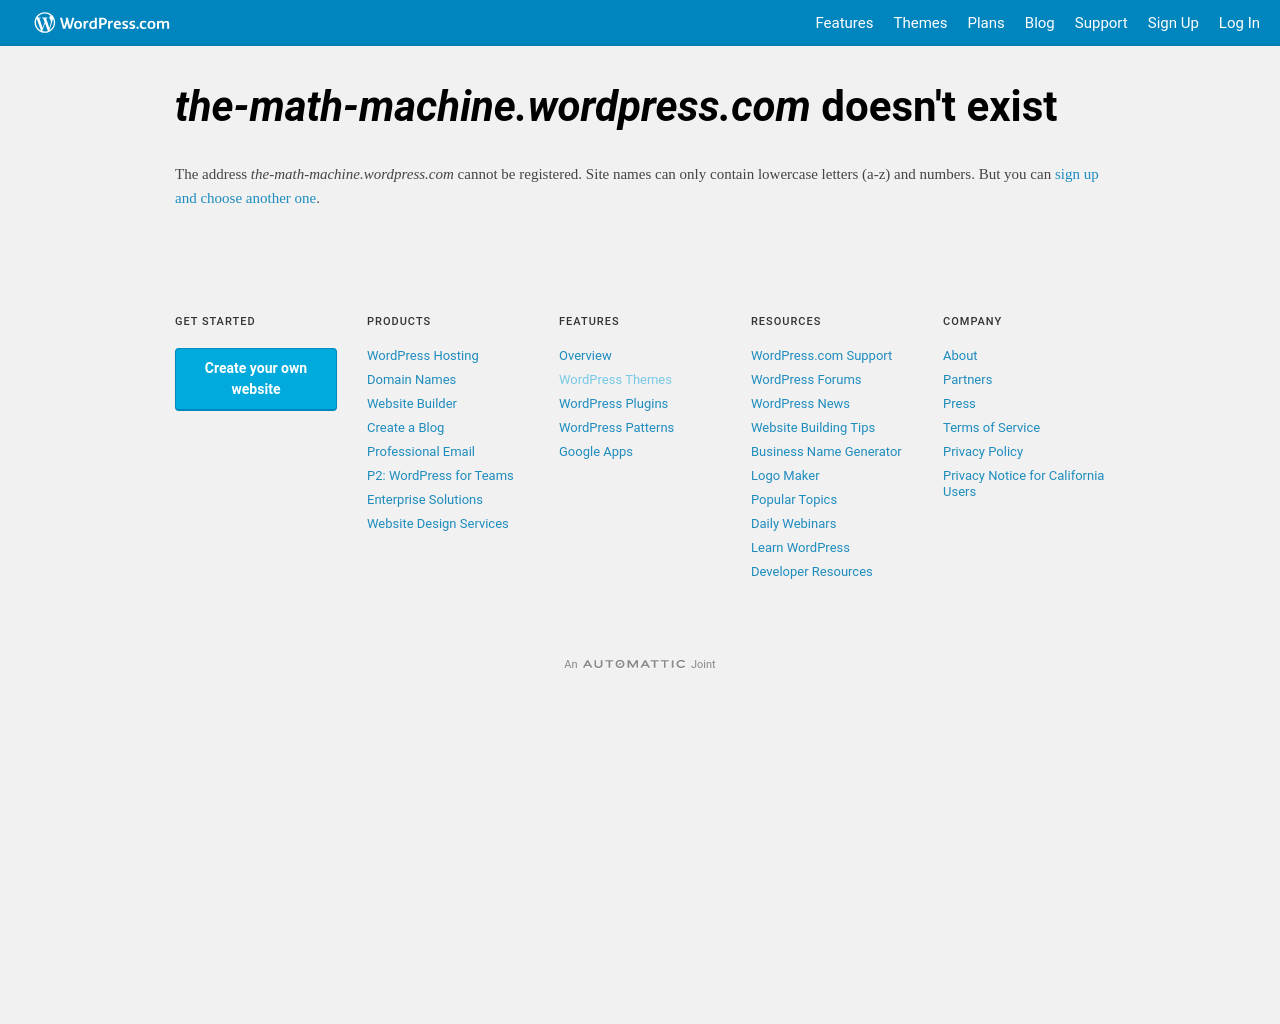 the-math-machine.org